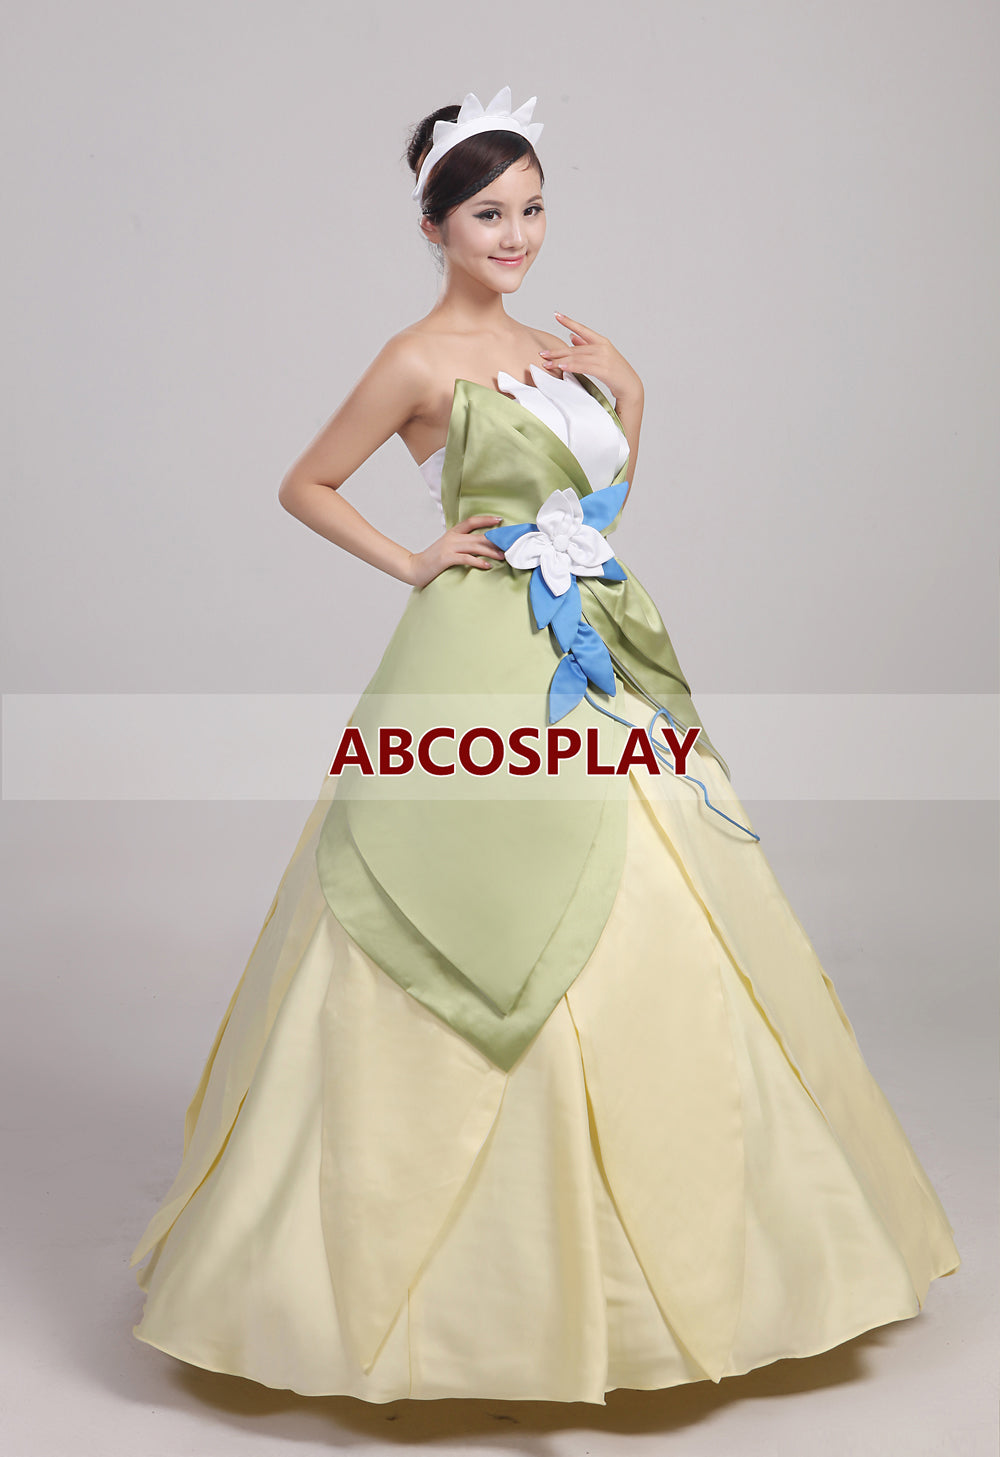 Princess And The Frog Princess Tiana Dress Woman Cosplay Costume